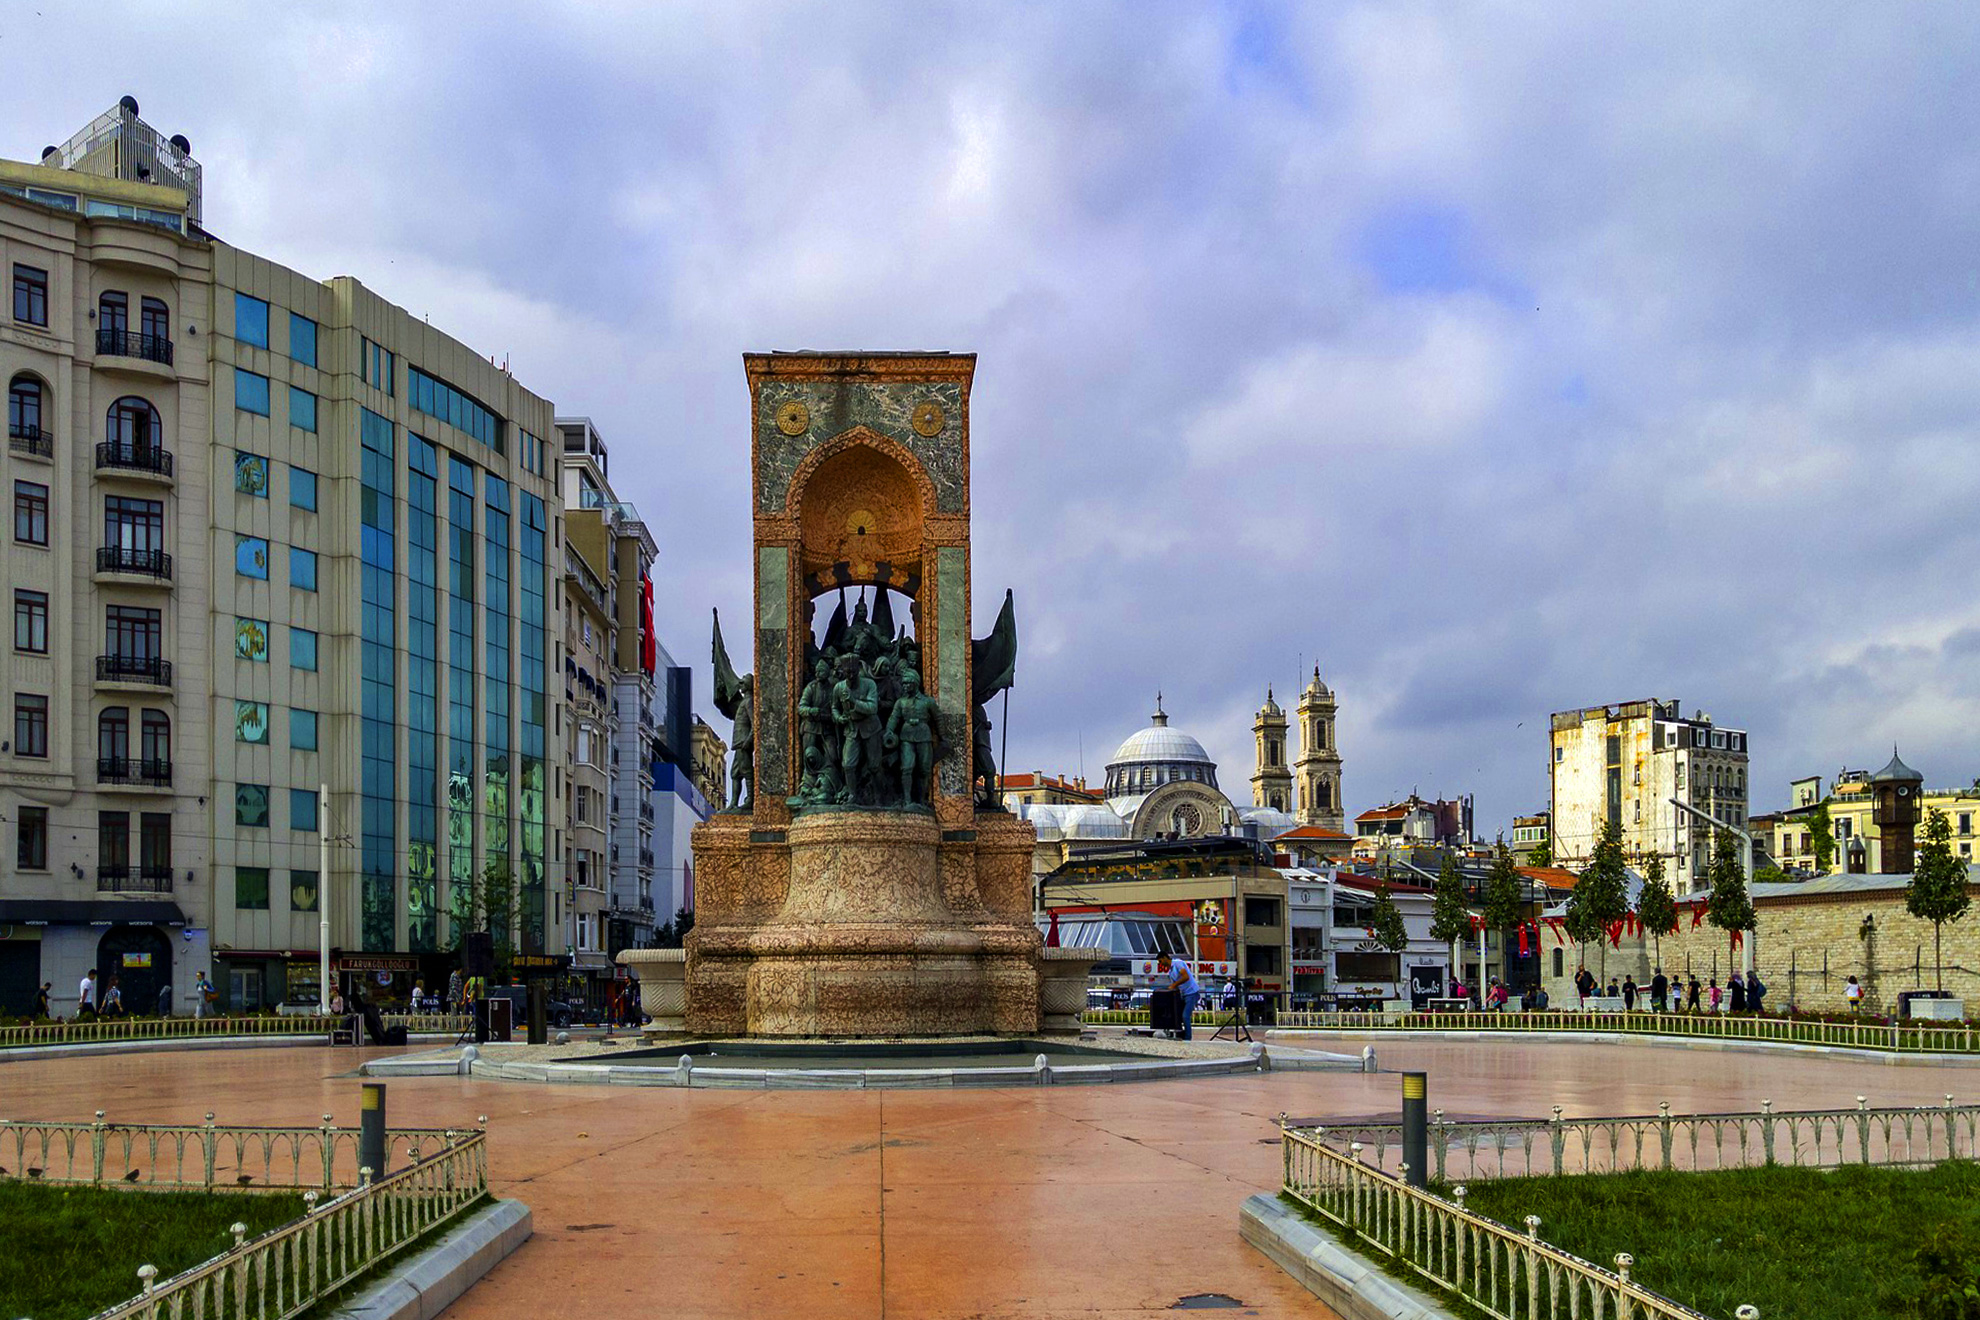  Истанбул - величието на една империя - Площад Таксим, Истанбул, Турция - Taksim Square, Istanbul, Turkey